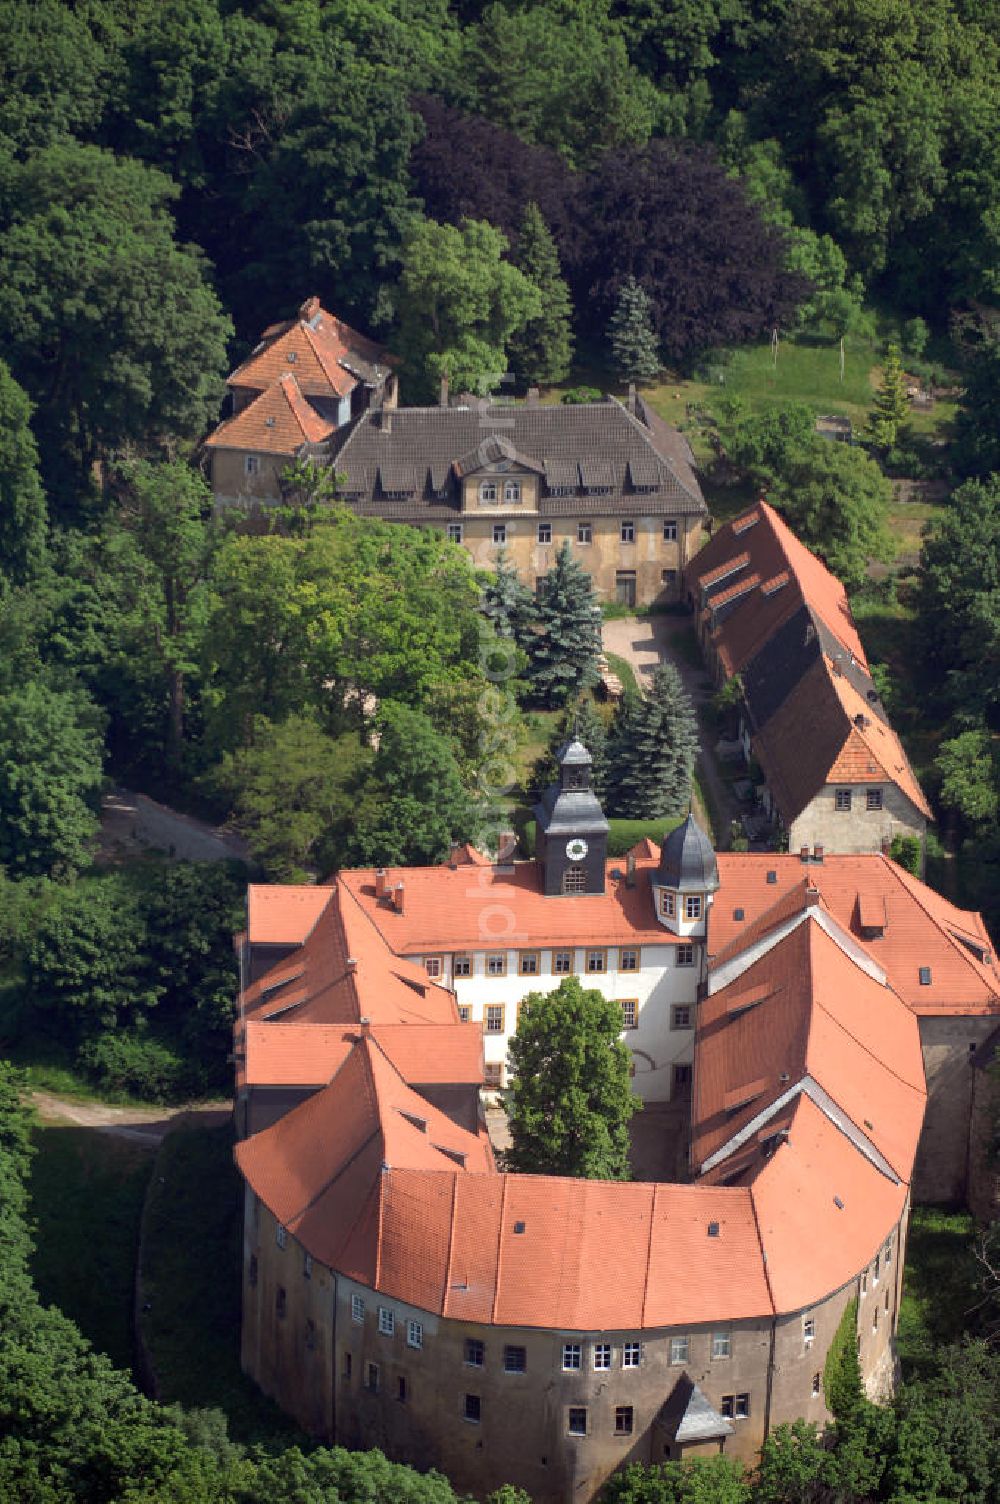 Aerial photograph WALTERSHAUSEN - Blick auf das Schloss Tenneberg in 99880 Waltershausen. Museum Schloss Tenneberg, Tenneberg 1; Herr Thomas Reinecke; Tel.: 0 36 22 / 6 91 70, info@schloss-tenneberg.de